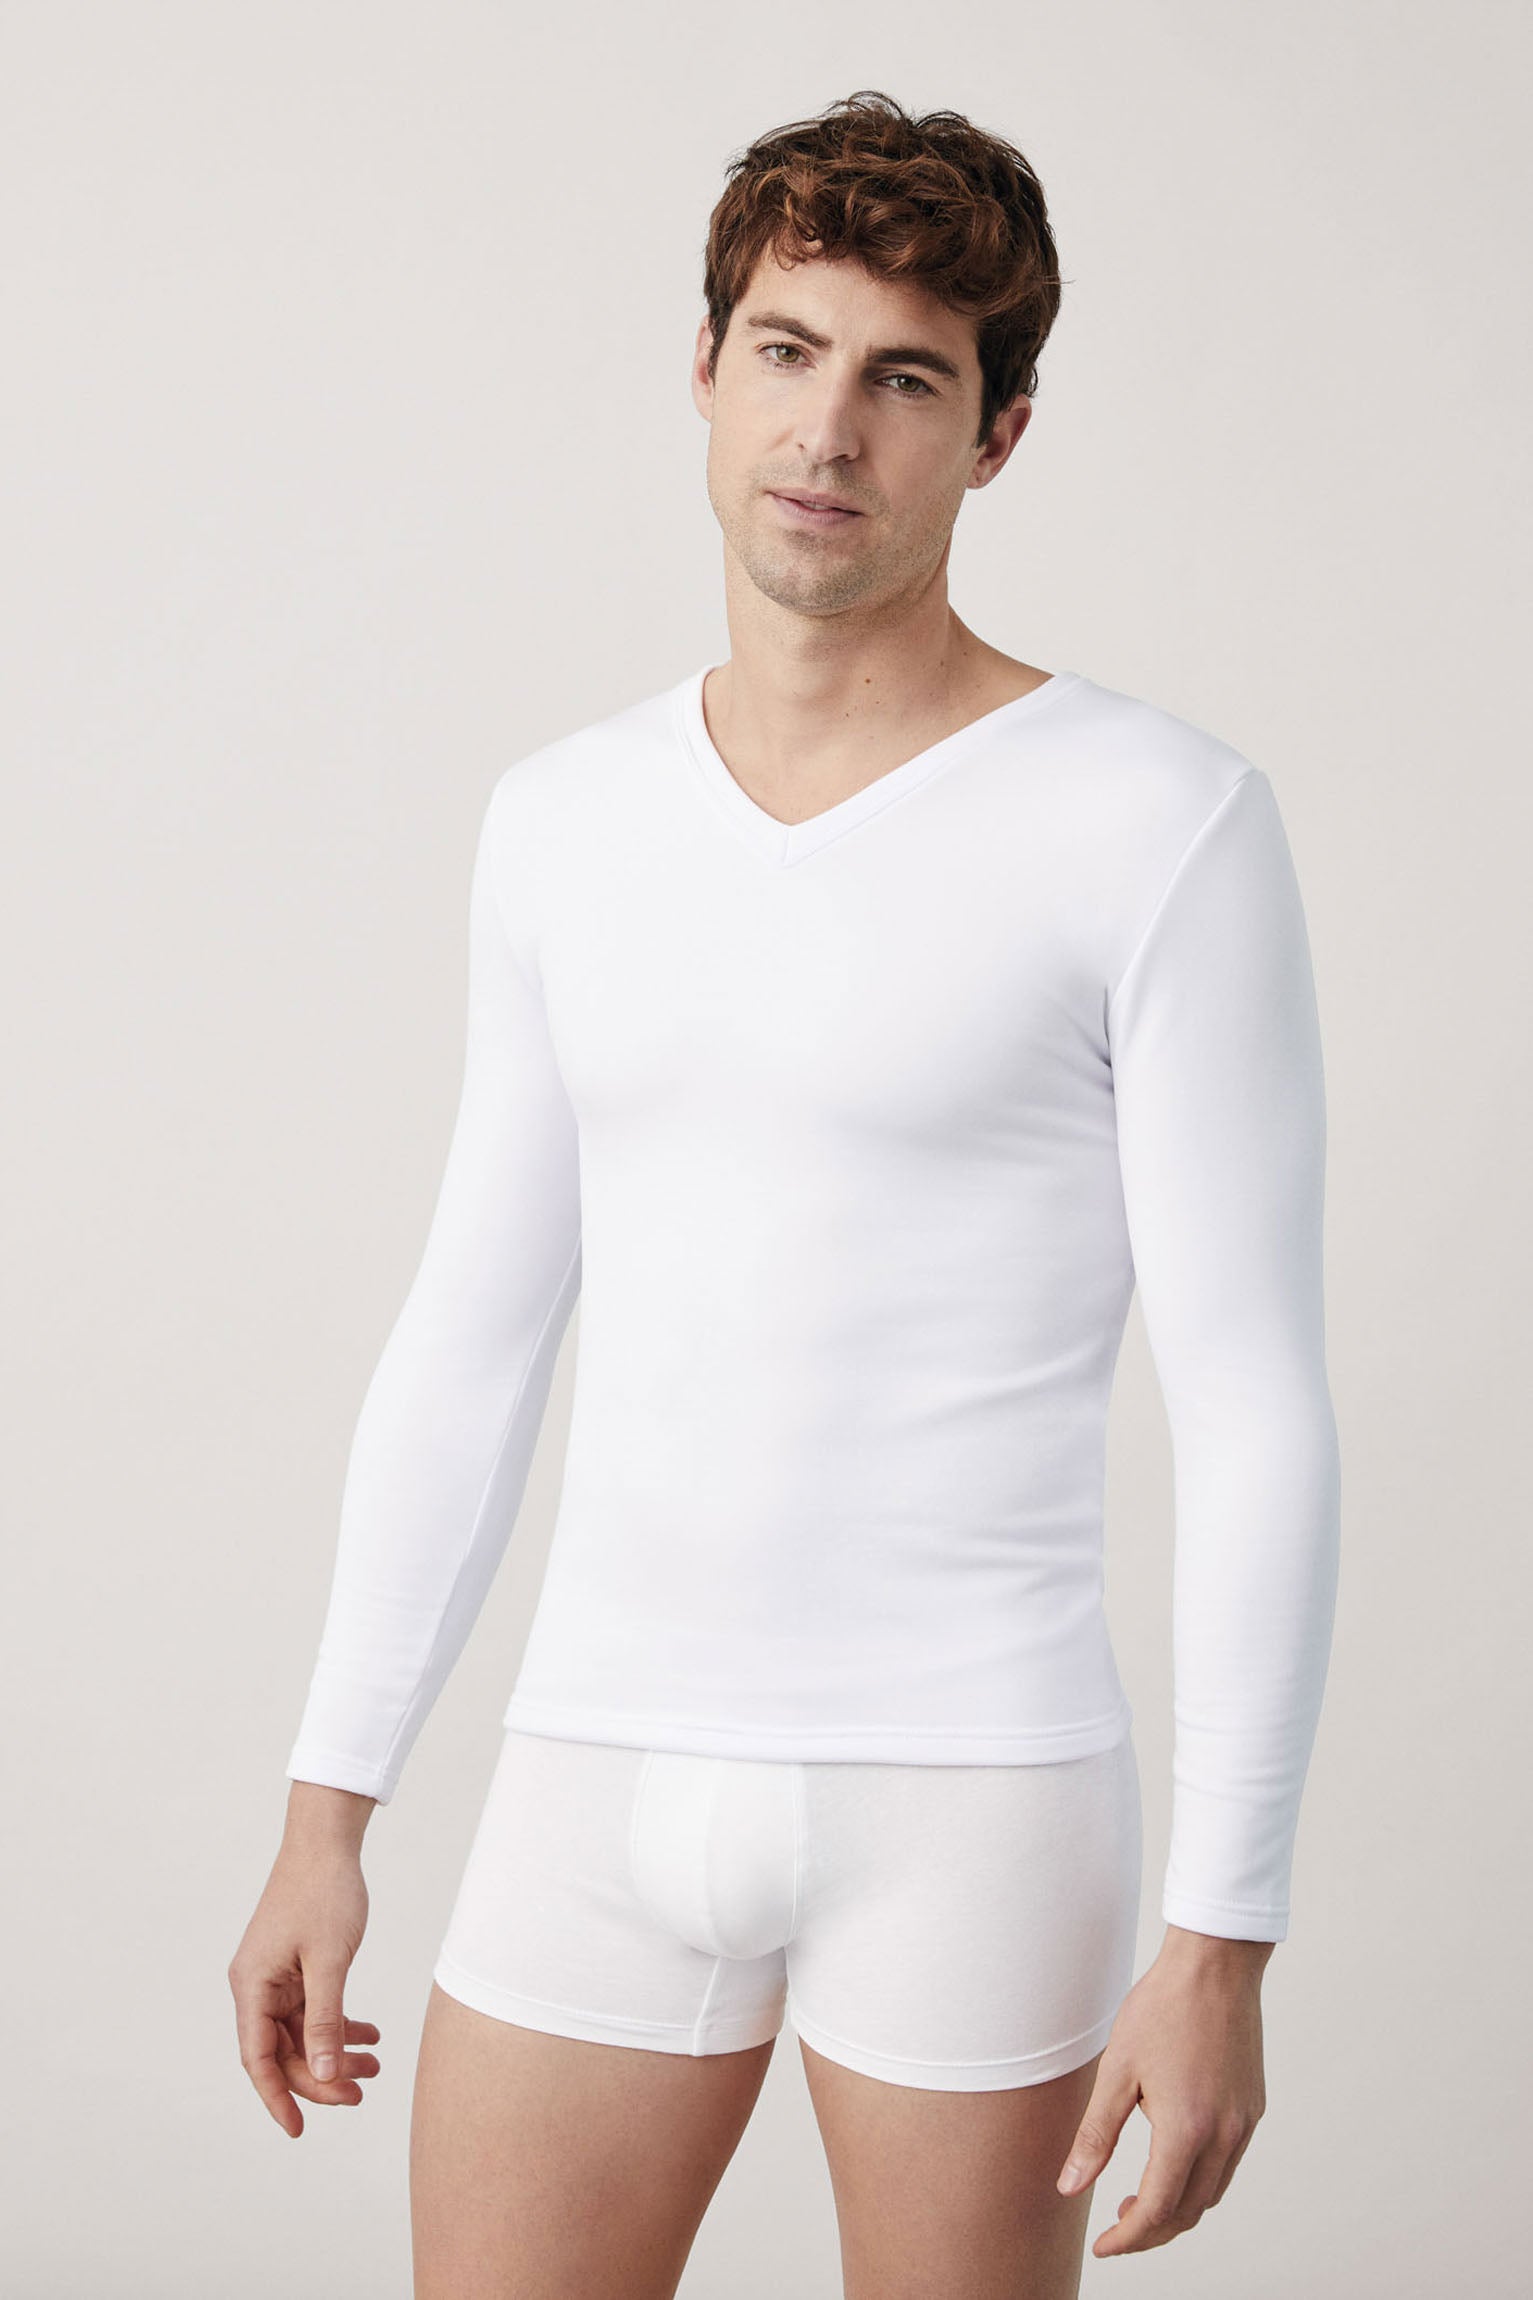 Camiseta de cuello alto para hombre, ropa interior térmica, ligera, casual,  color puro